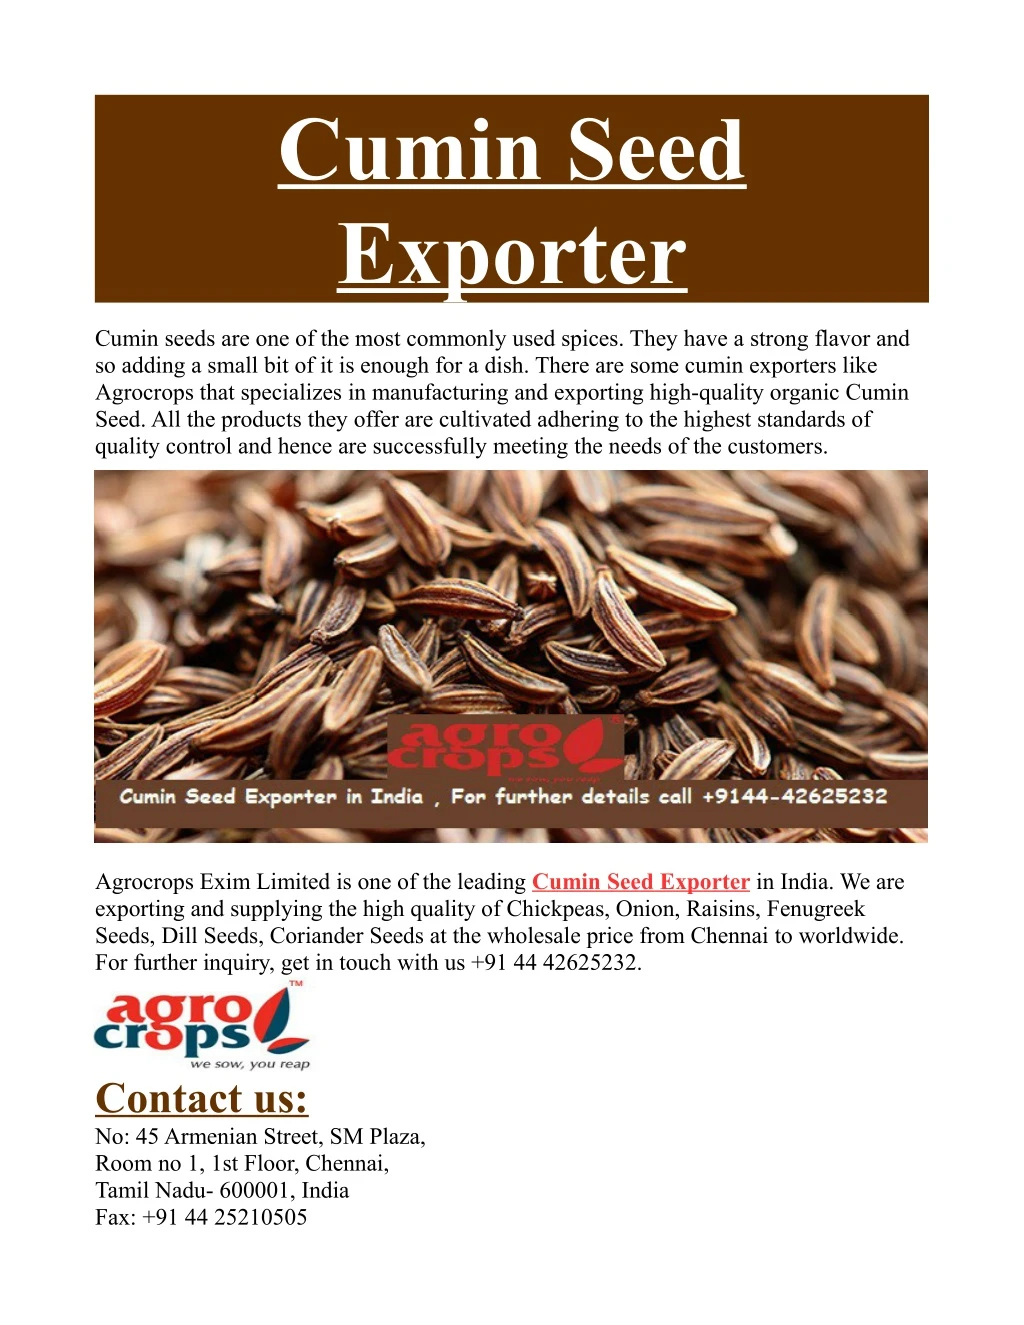 cumin seed exporter